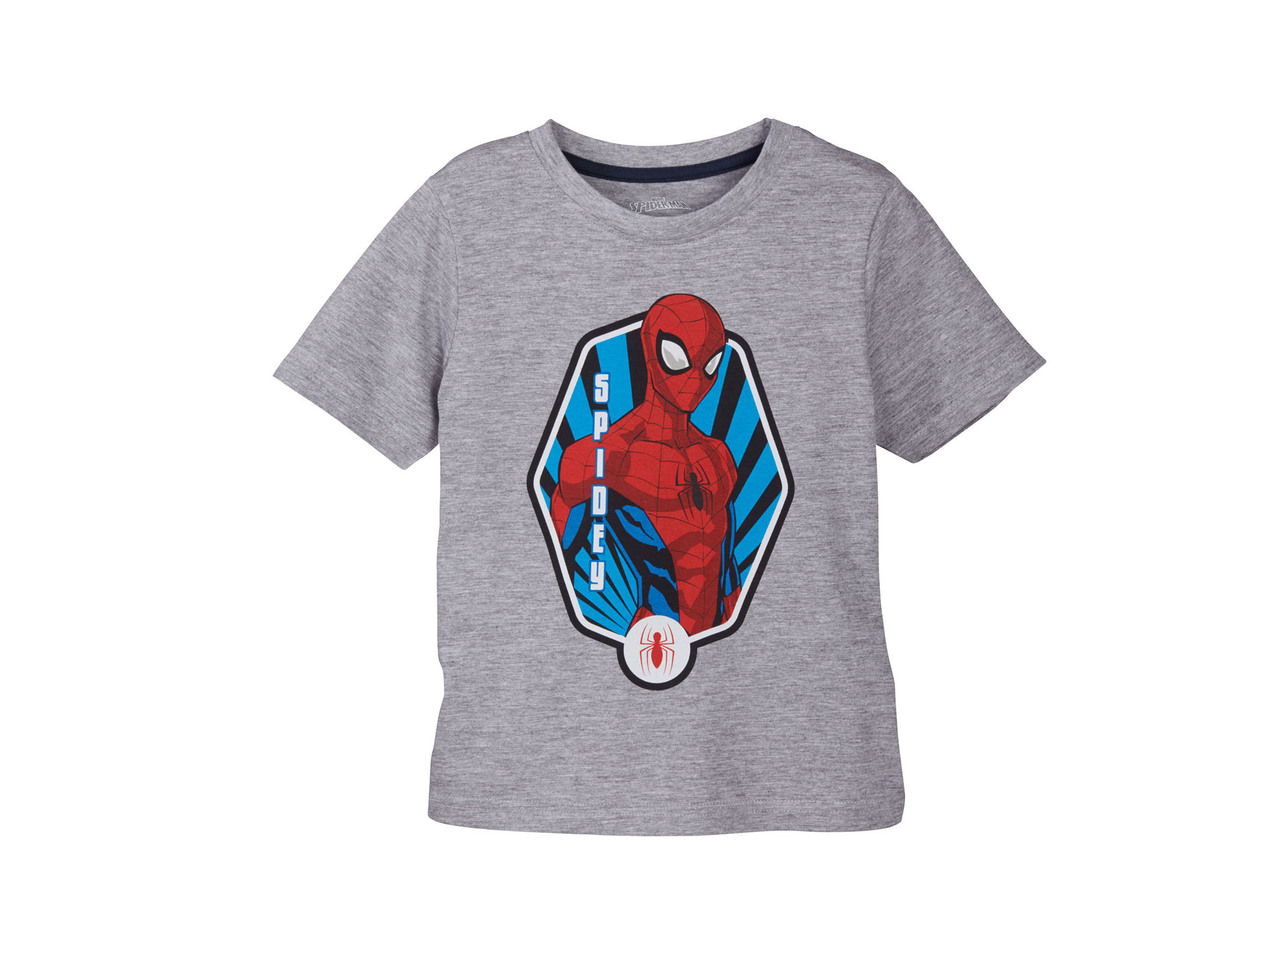 Boys' Shortie Pyjamas - "Spiderman, Cars, Paw Patrol"